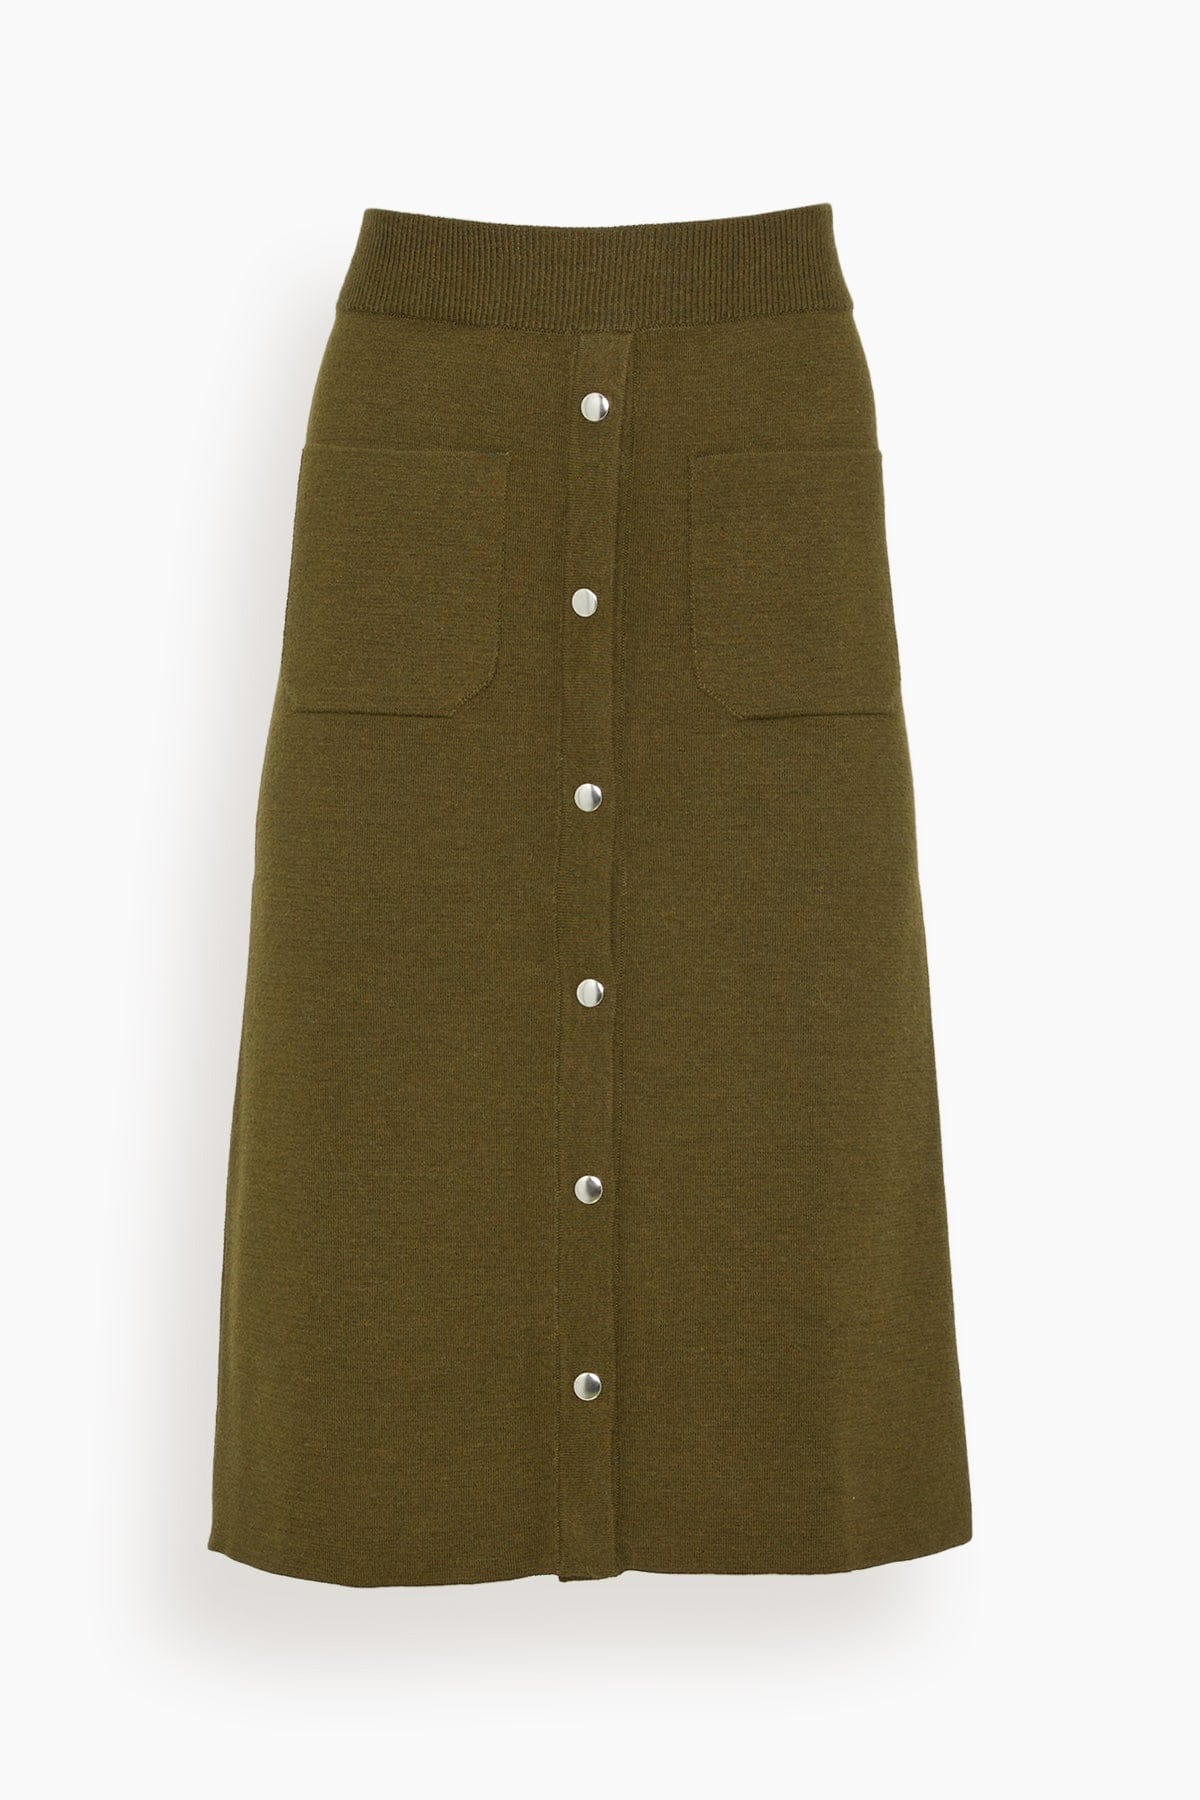 Bing Skirt in Olive - 1